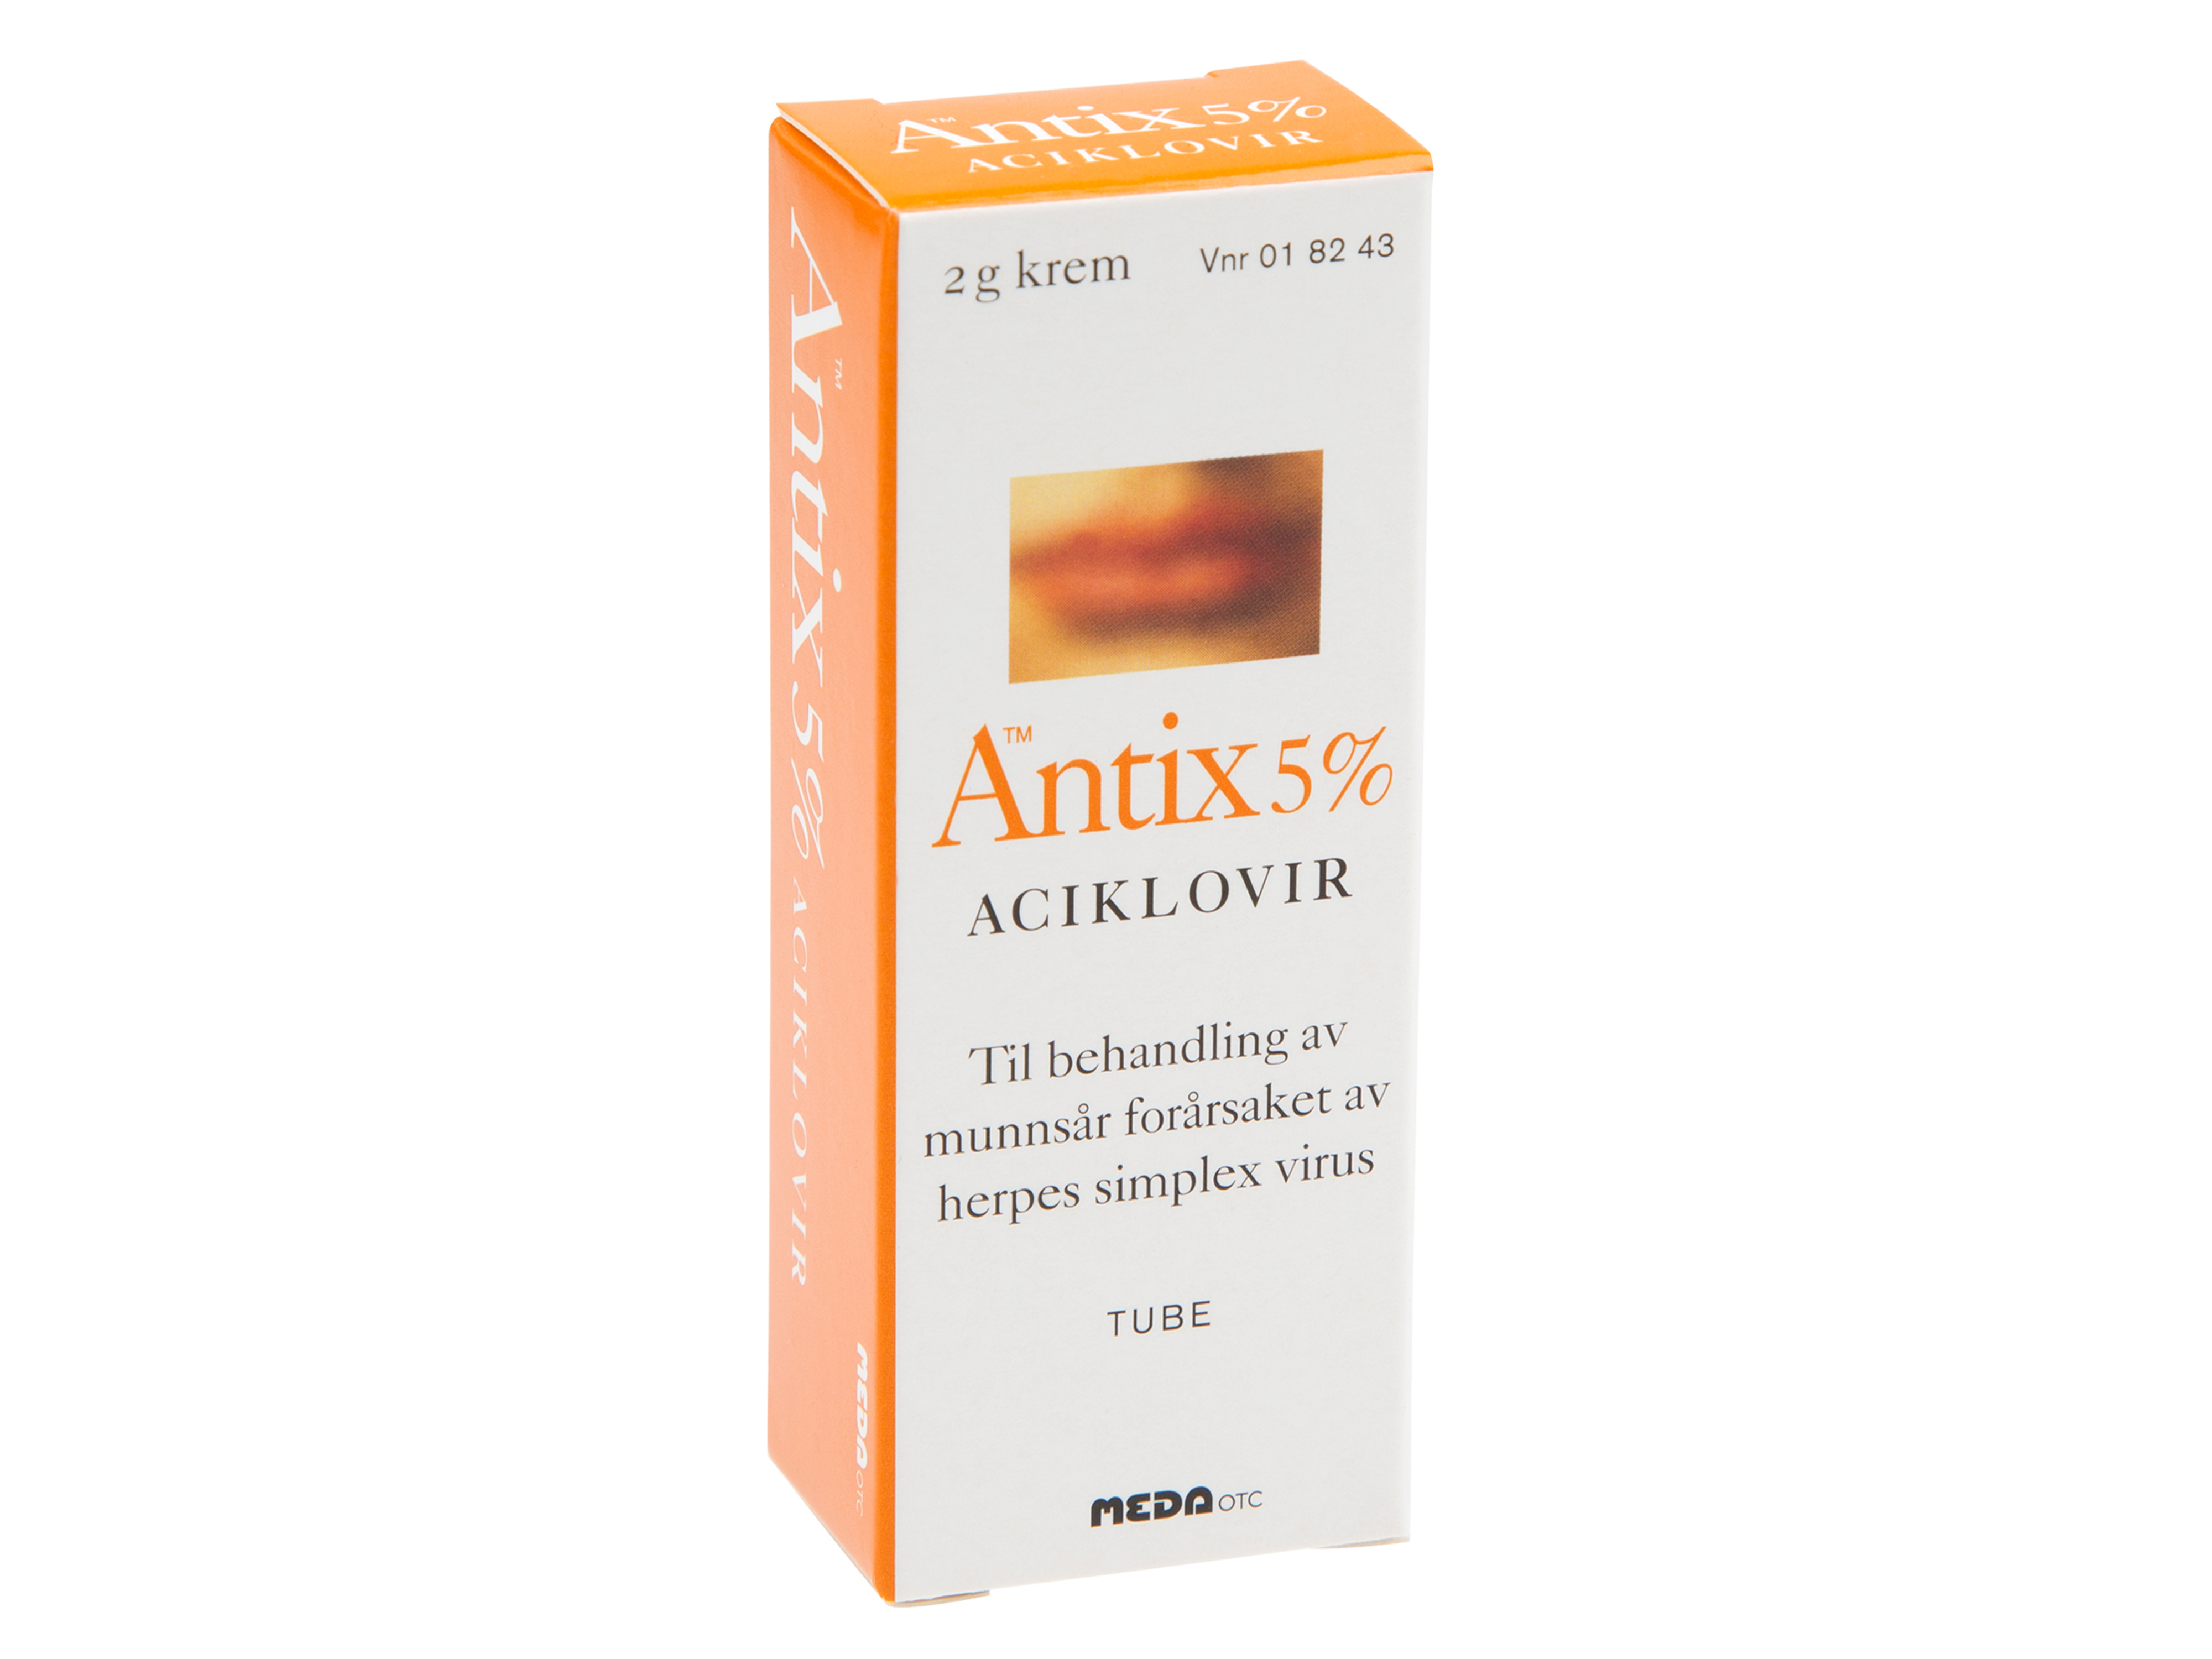 Antix Krem 5 %, 2 g.